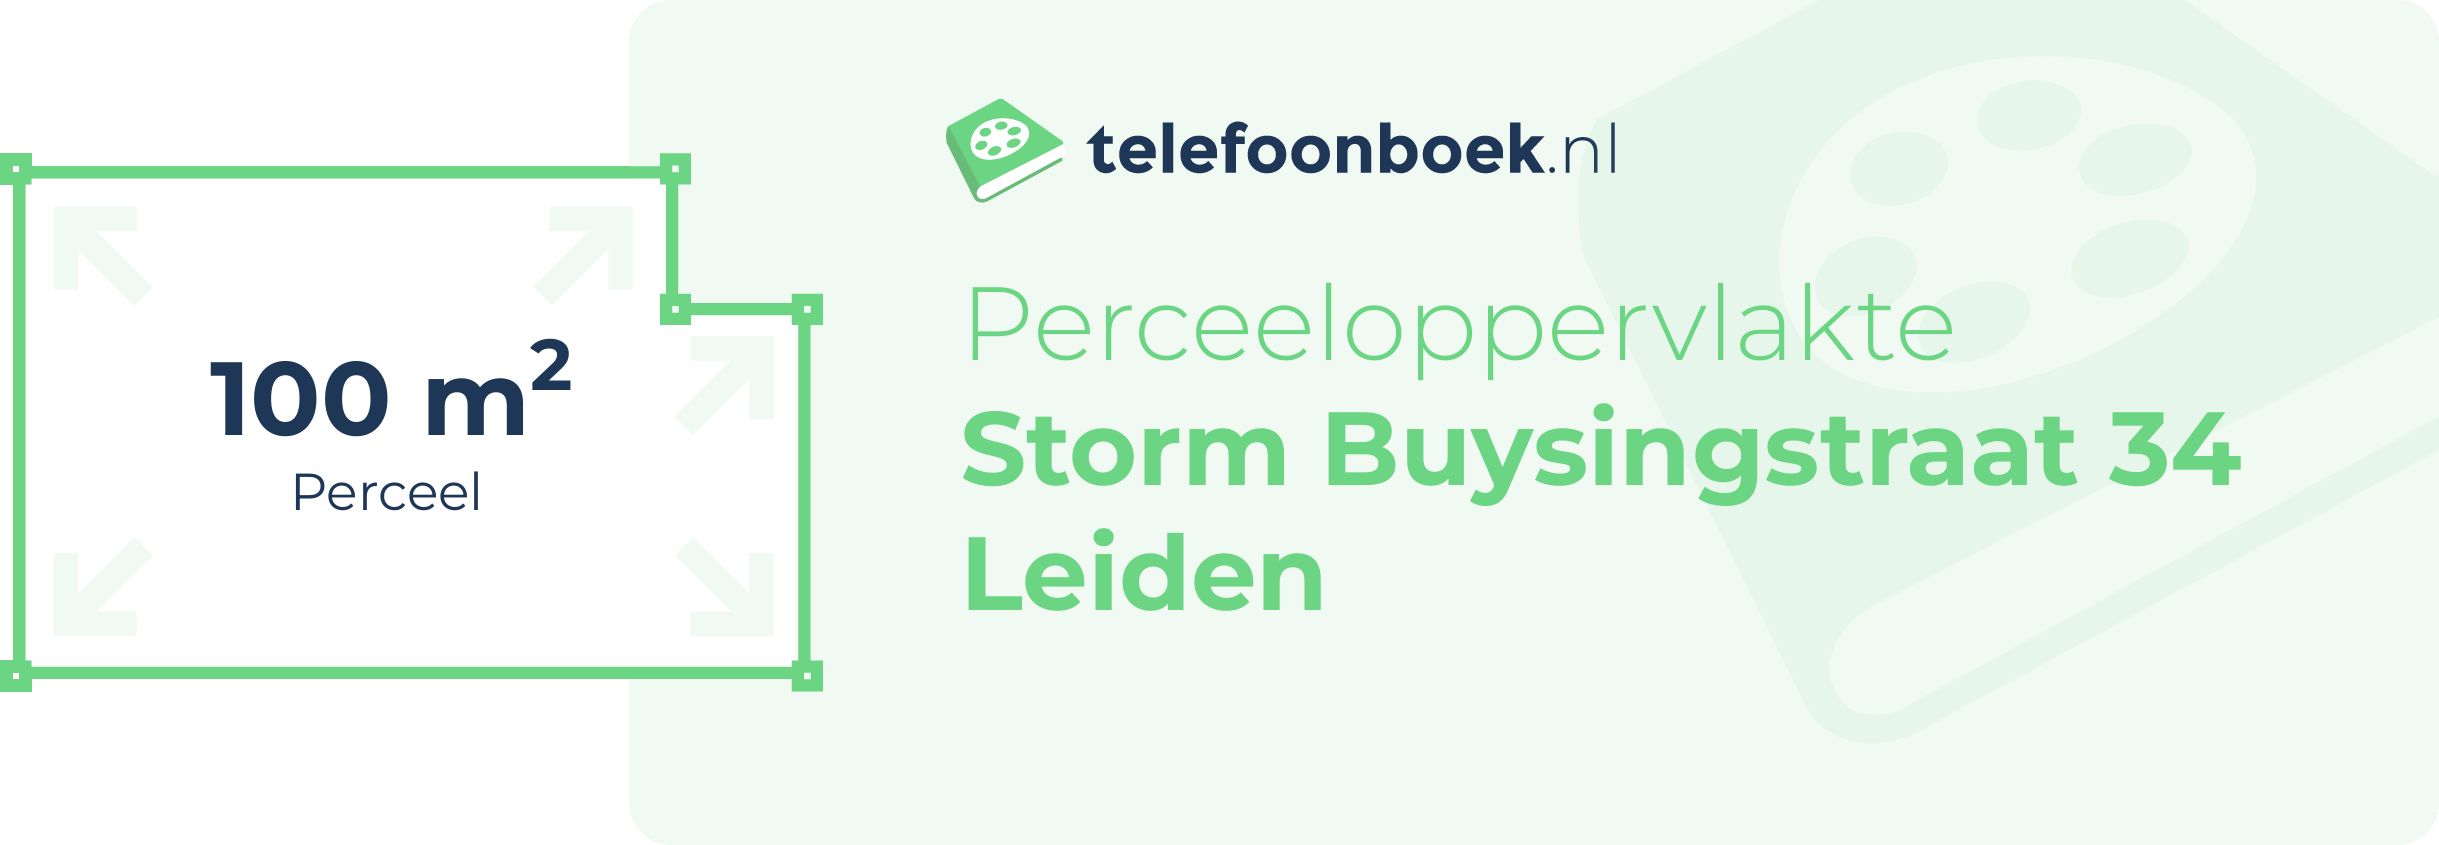 Perceeloppervlakte Storm Buysingstraat 34 Leiden